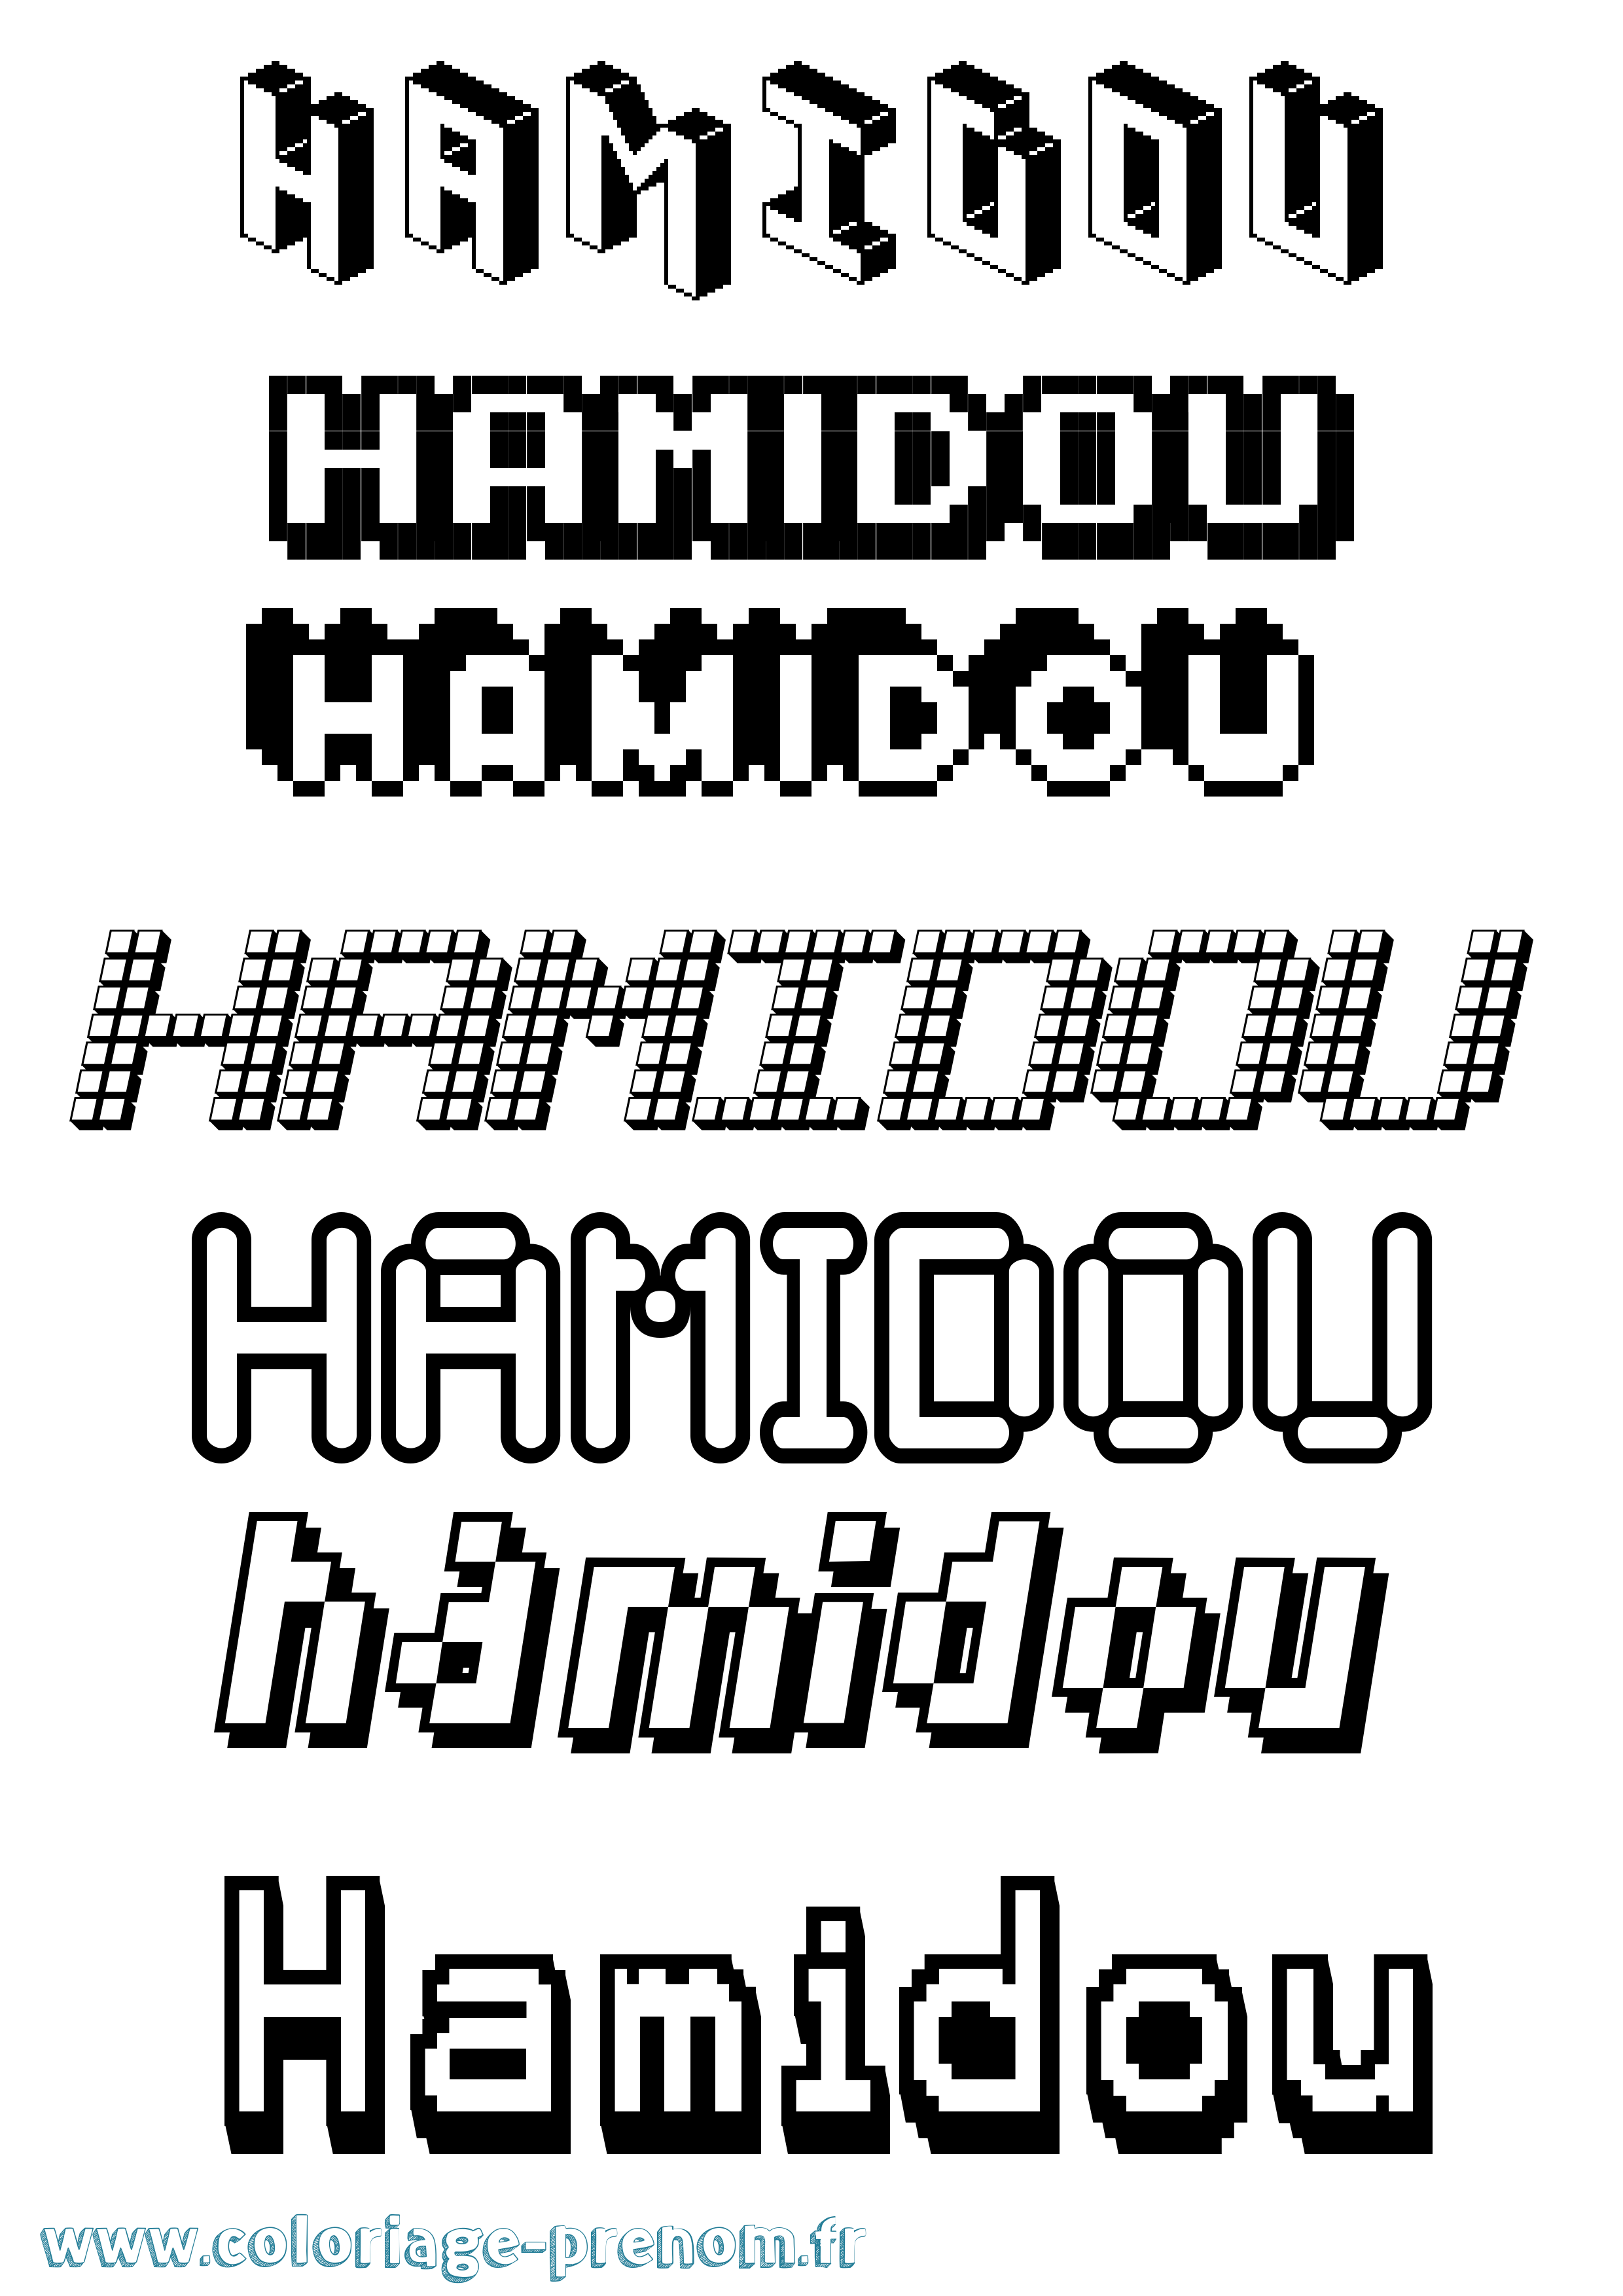 Coloriage prénom Hamidou